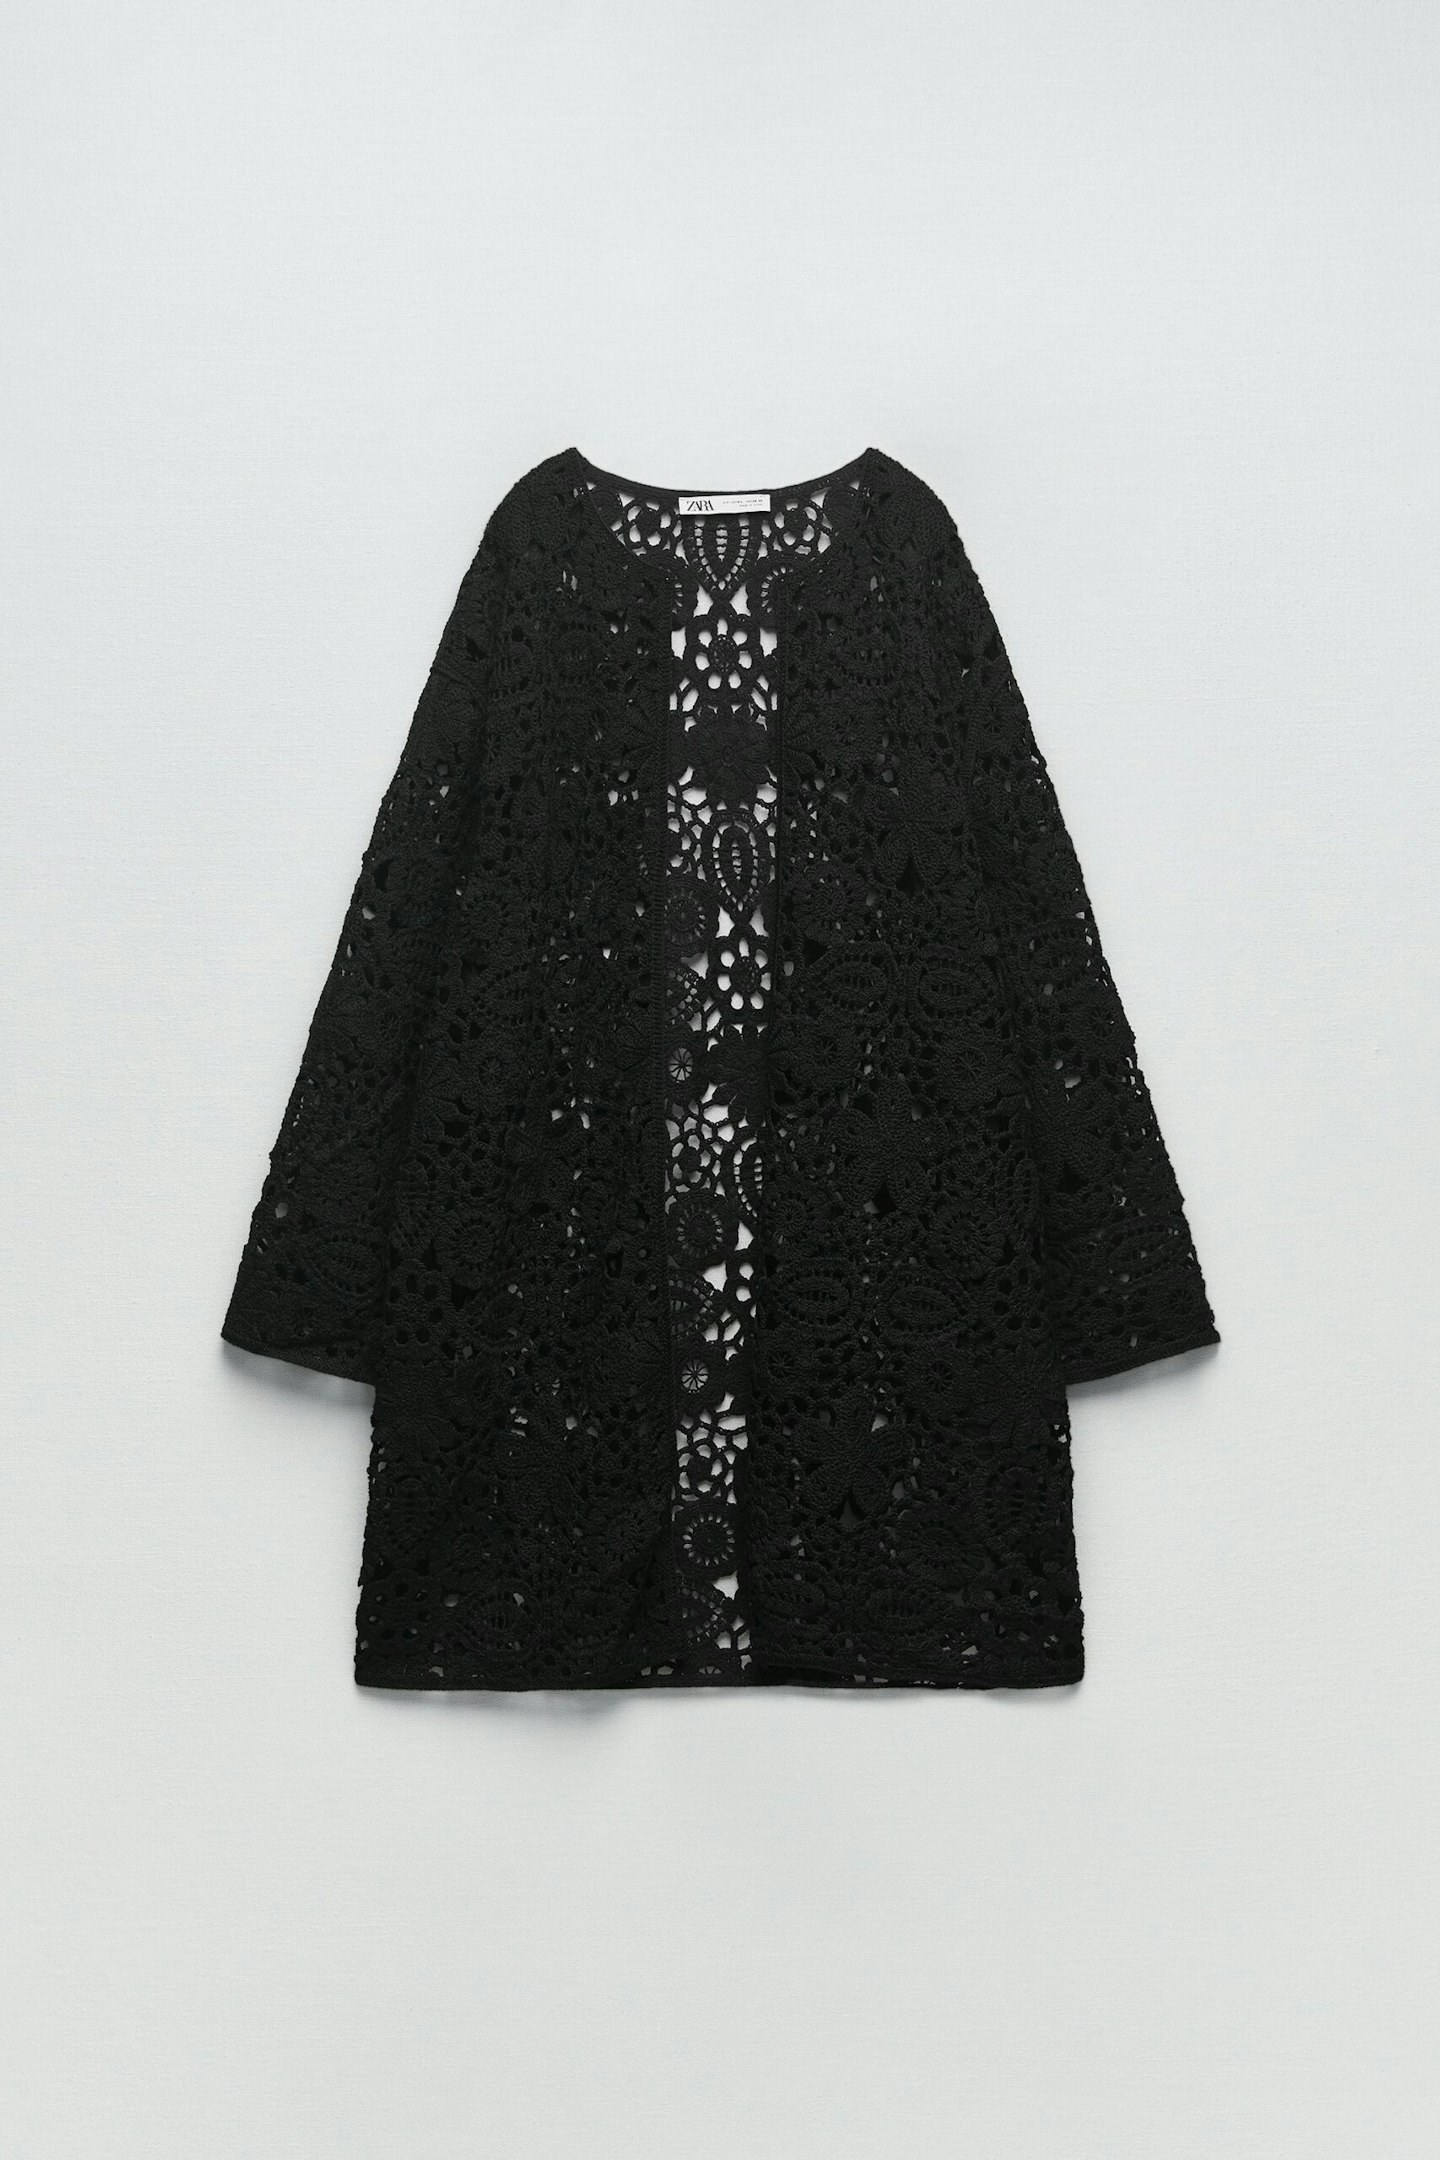 Zara, Macramé Knit Coat